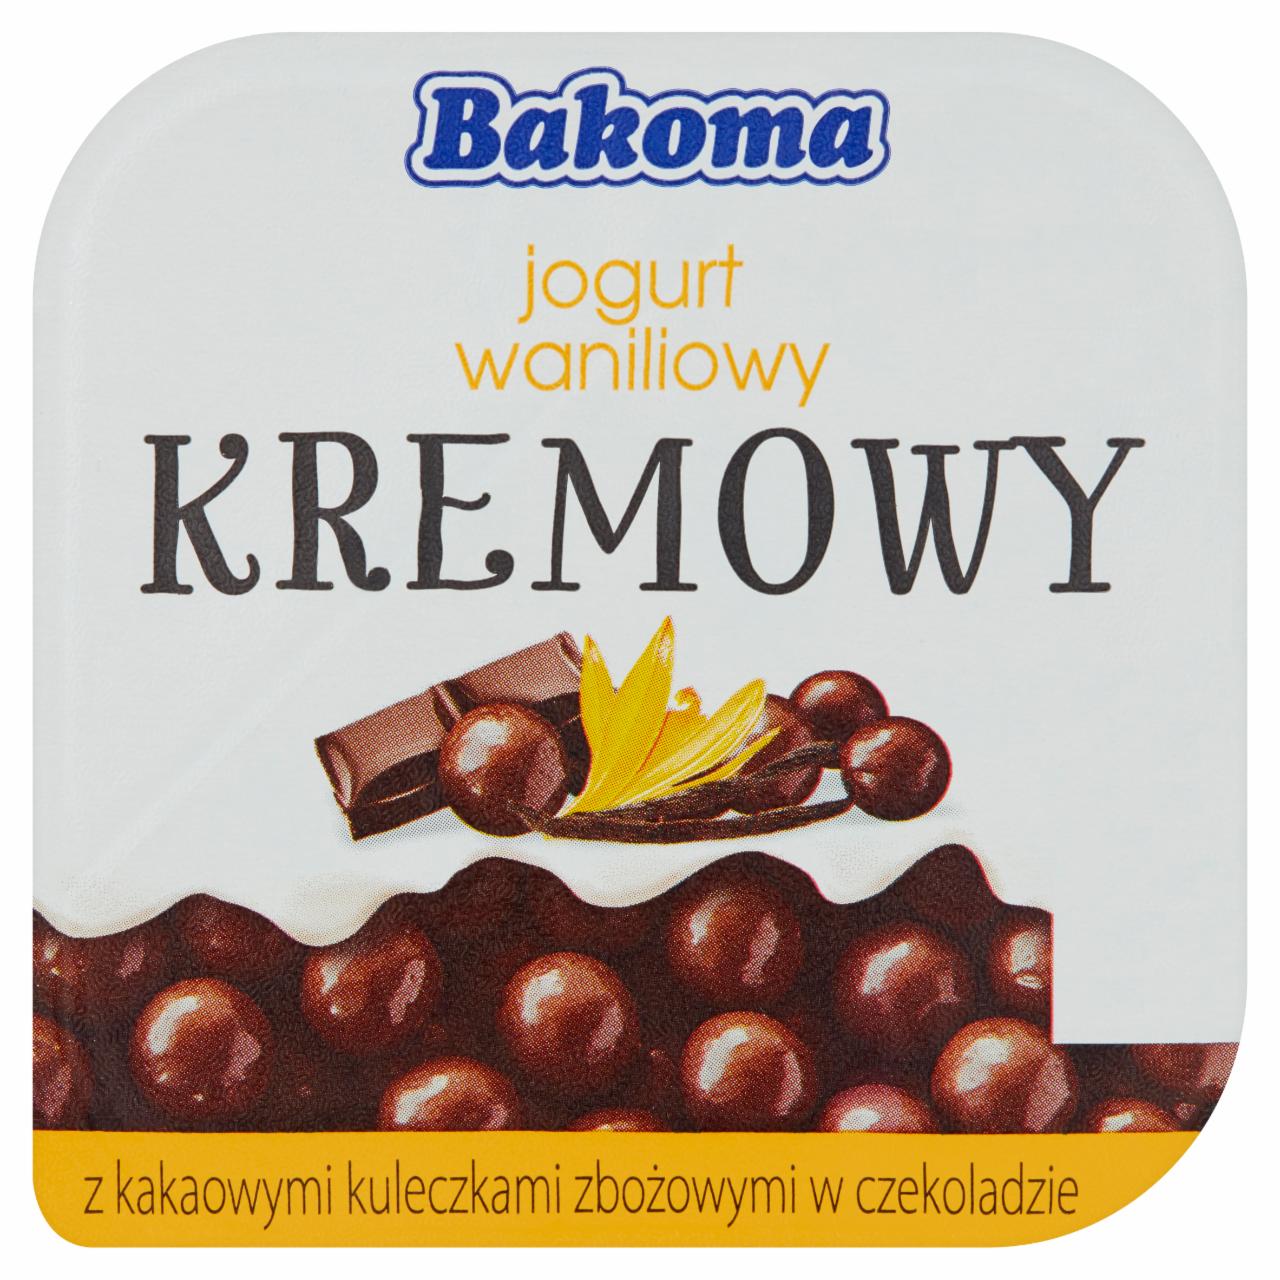 Zdjęcia - Bakoma Kremowy jogurt waniliowy z kakaowymi kuleczkami zbożowymi w czekoladzie 150 g